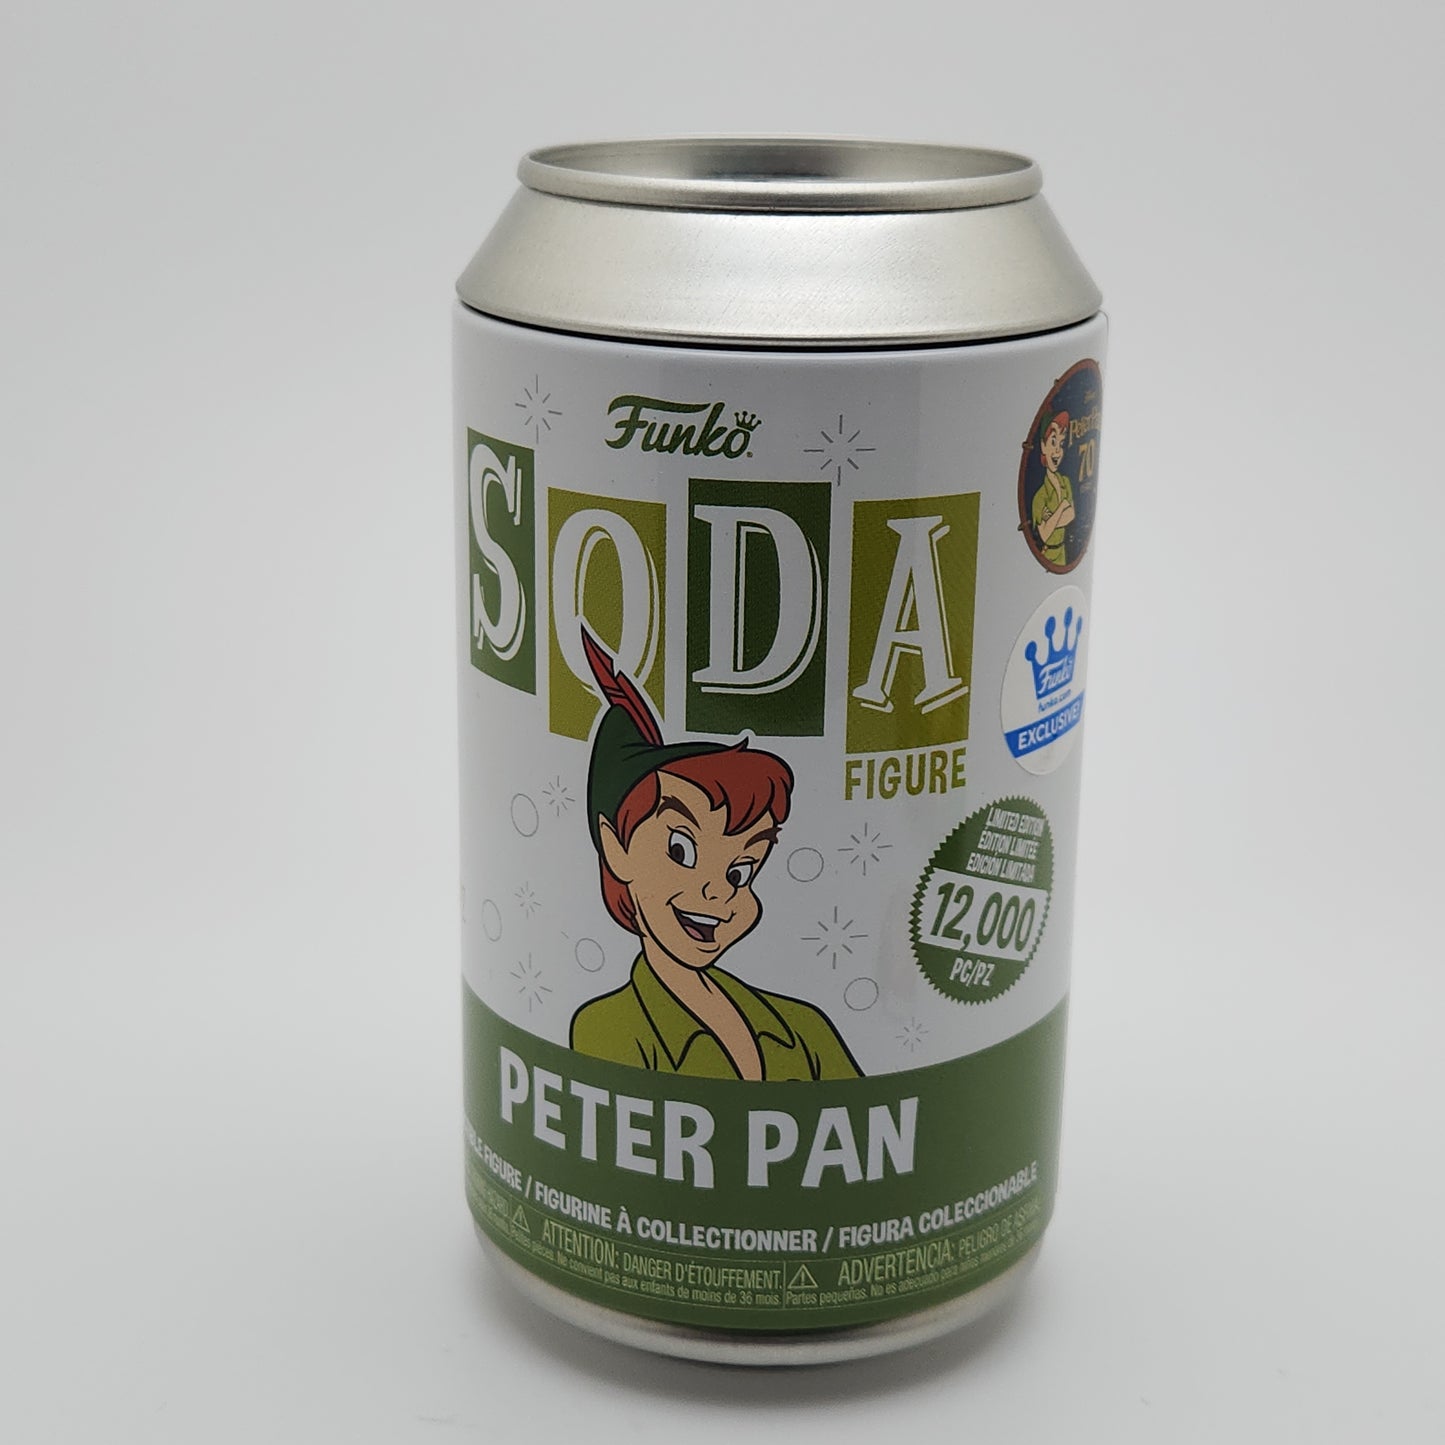 Funko Soda- Peter Pan (Disney)